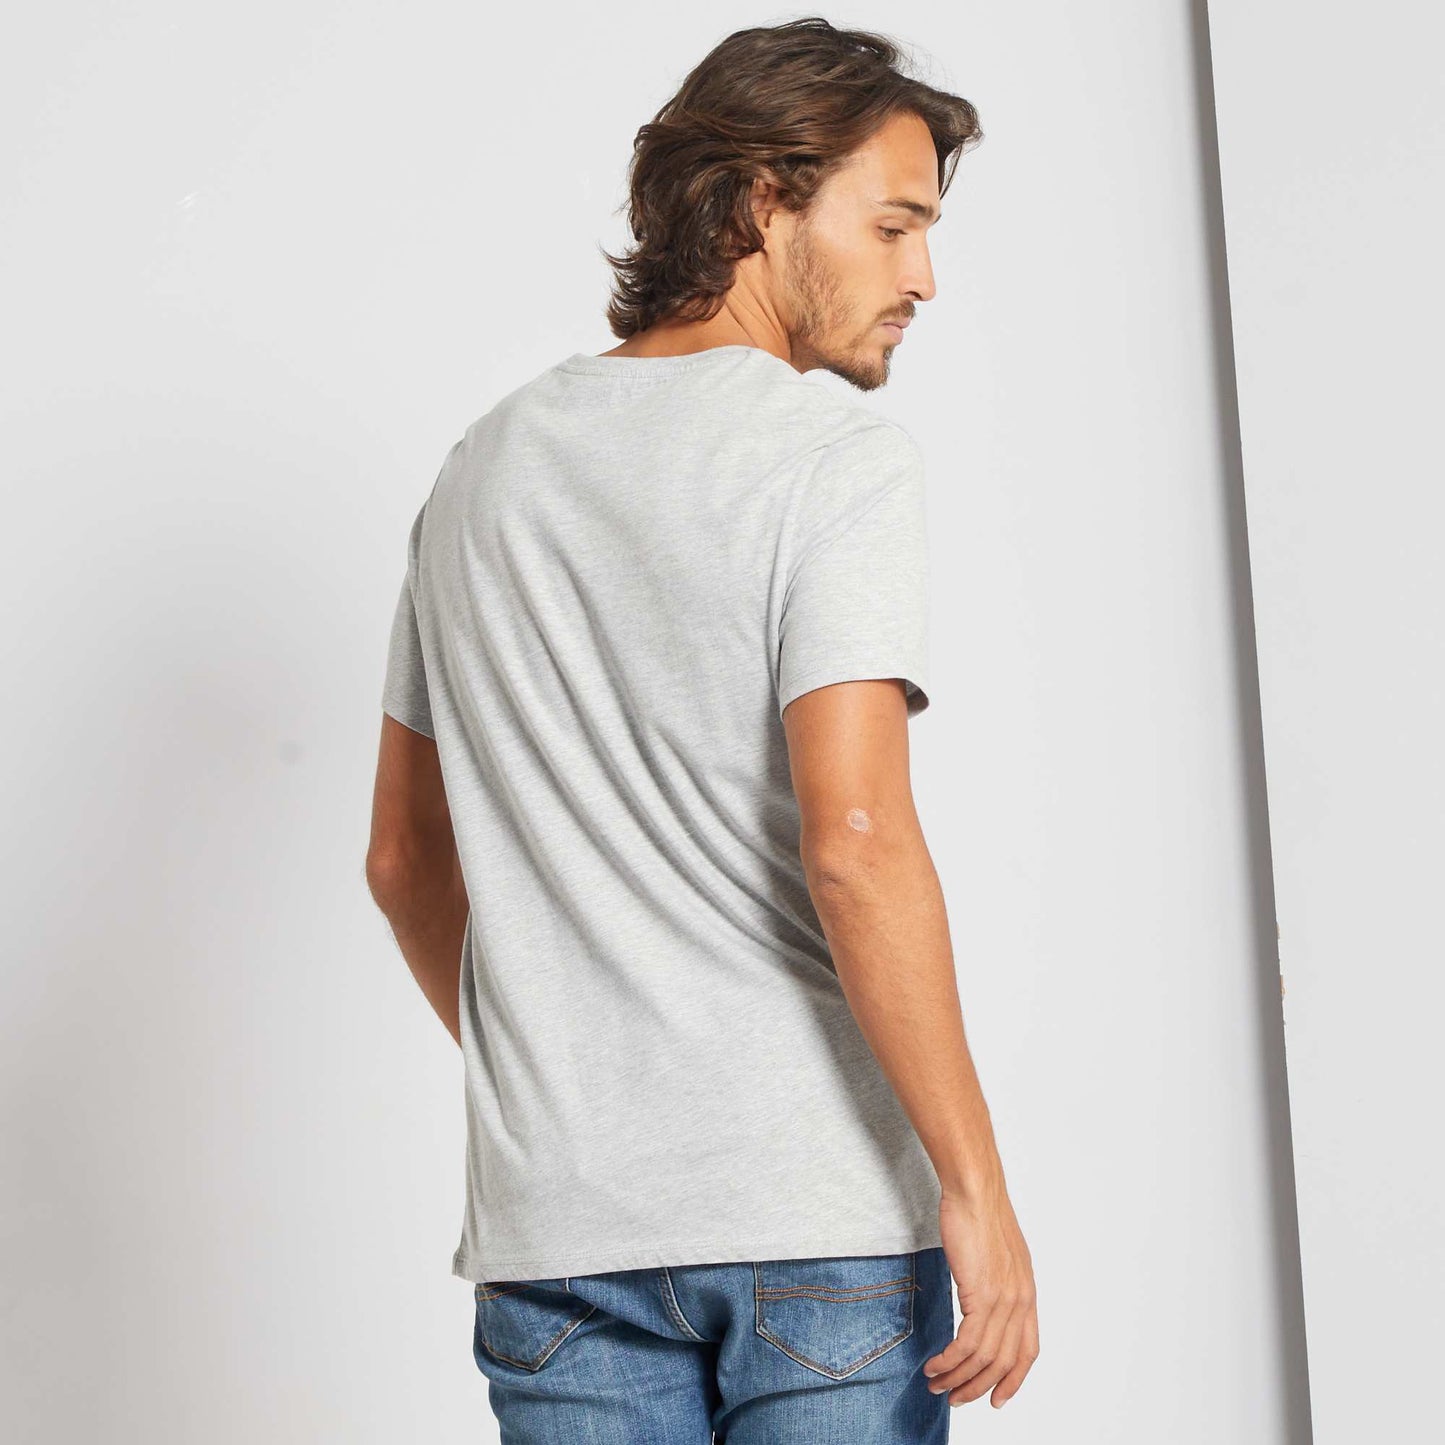 T-shirt jersey uni gris chiné clair